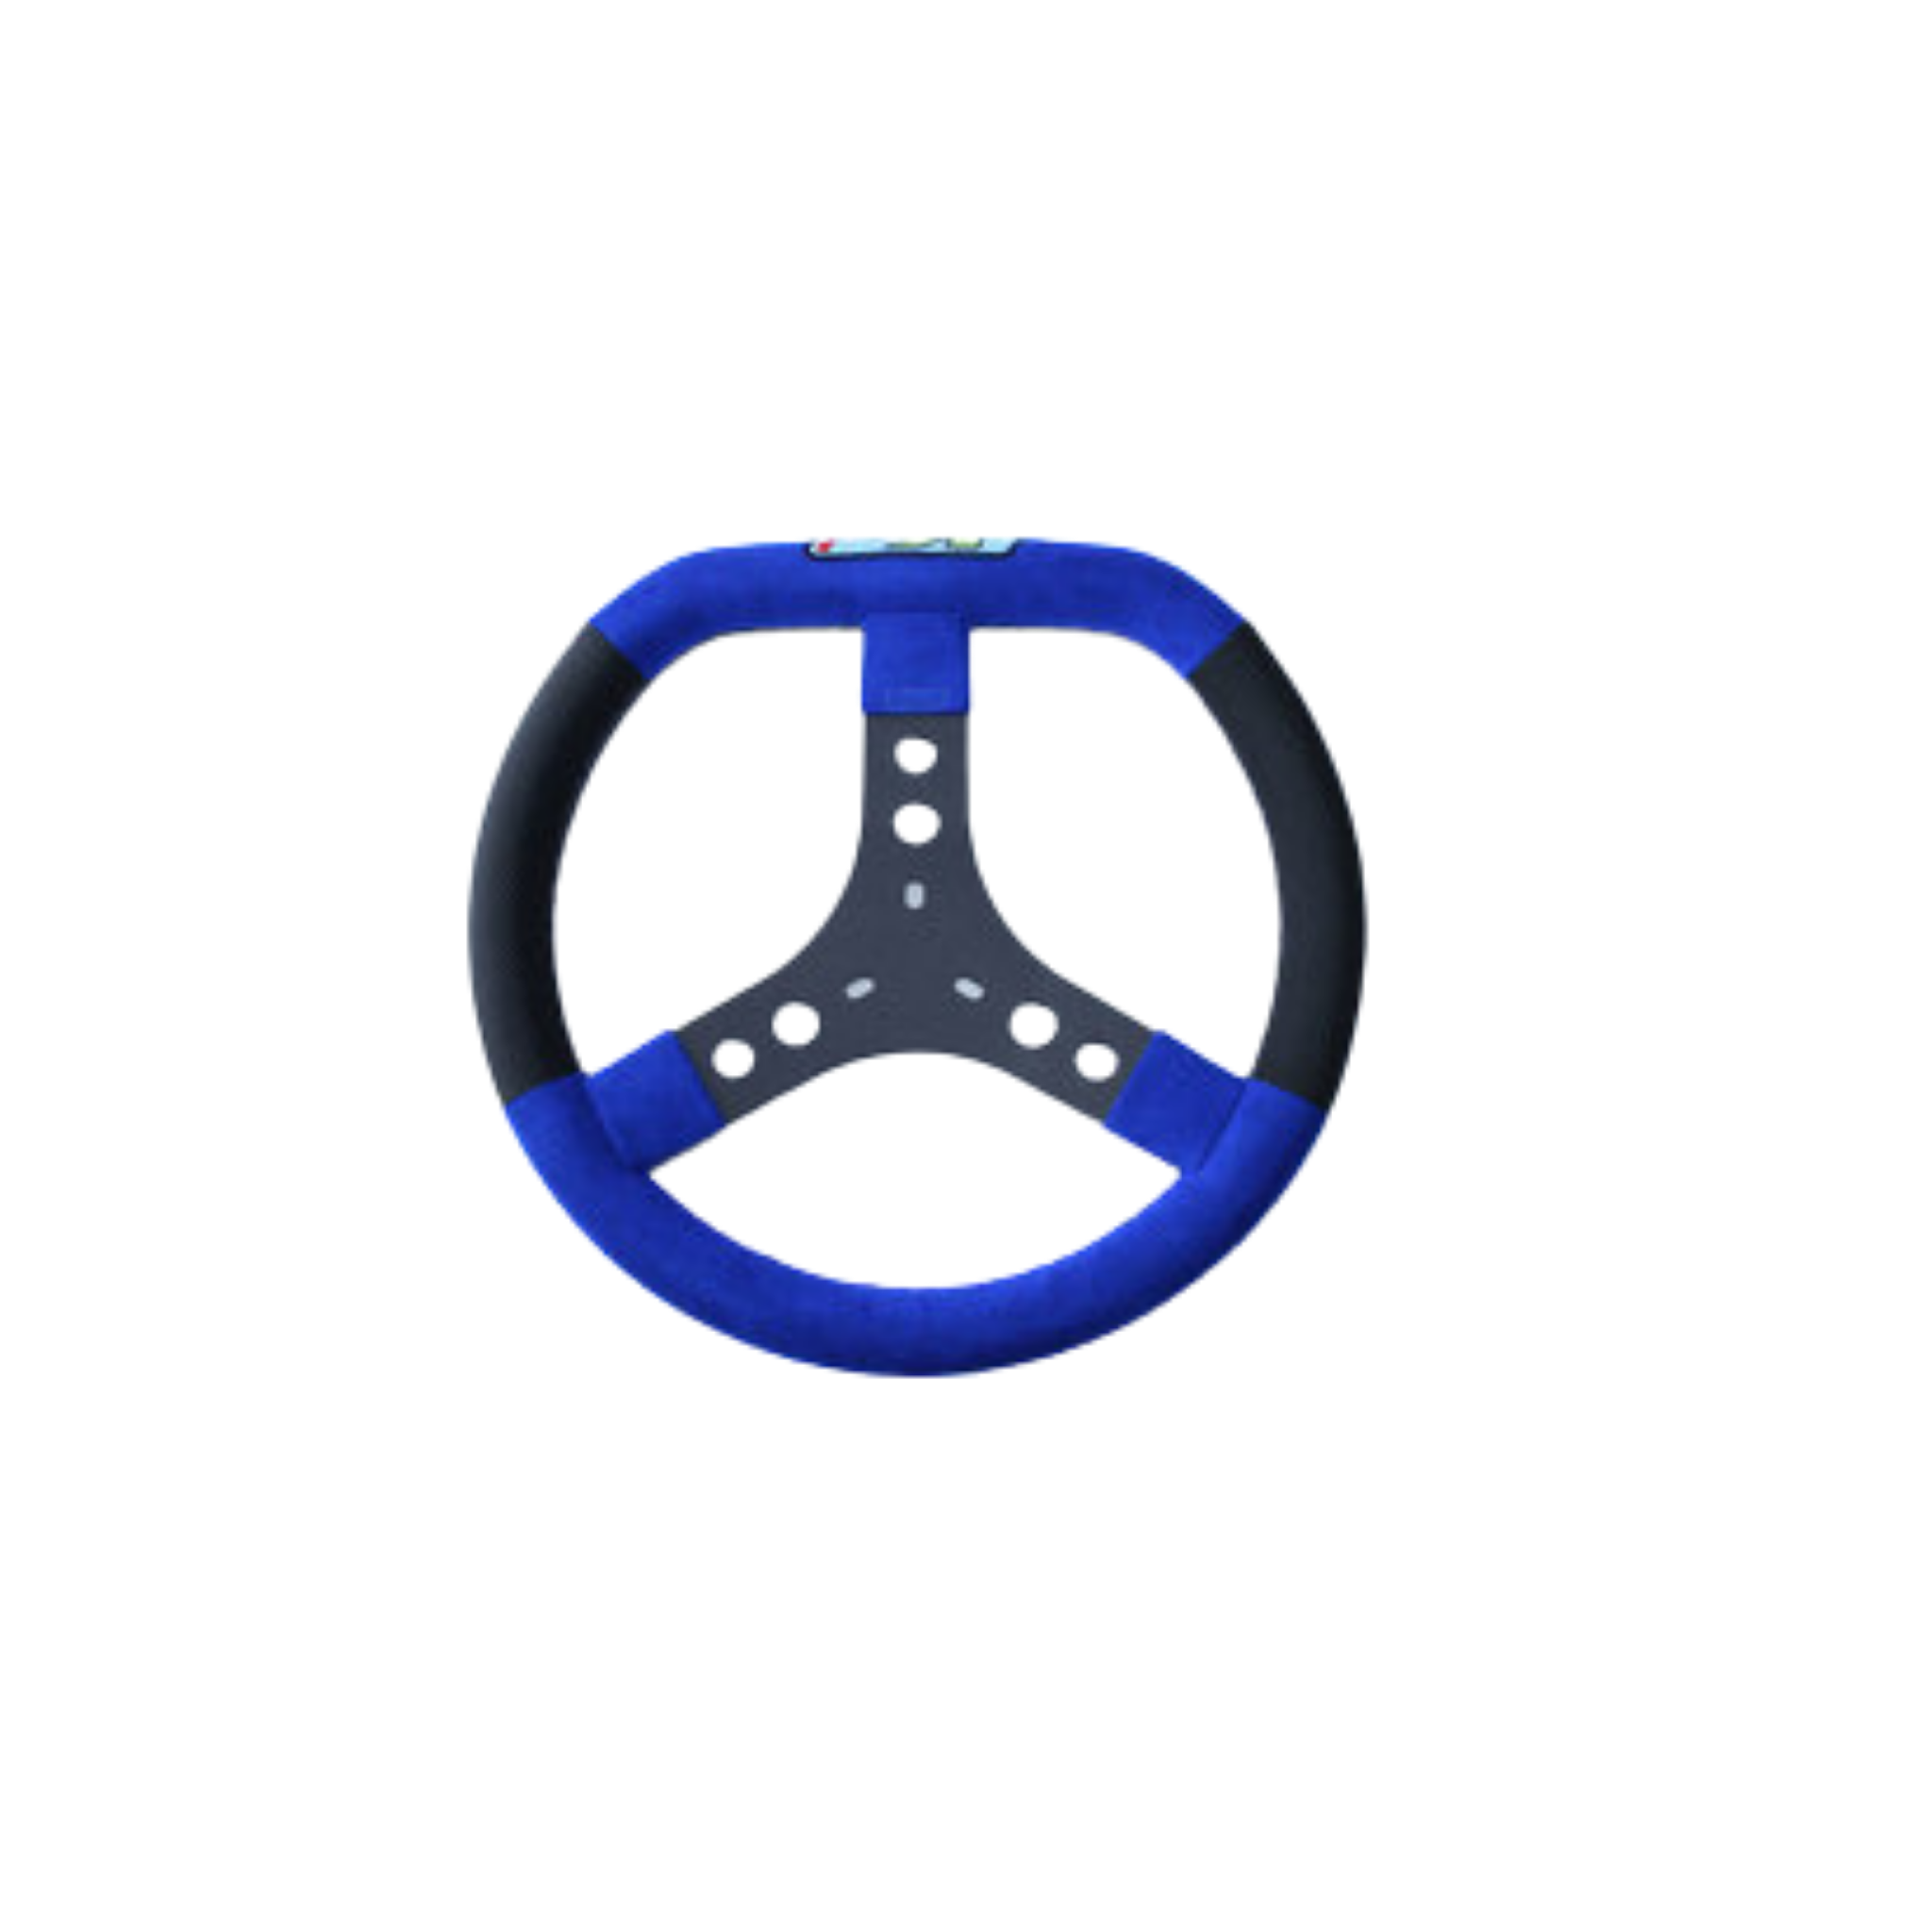 KG Blue Flat Top Steering Wheel